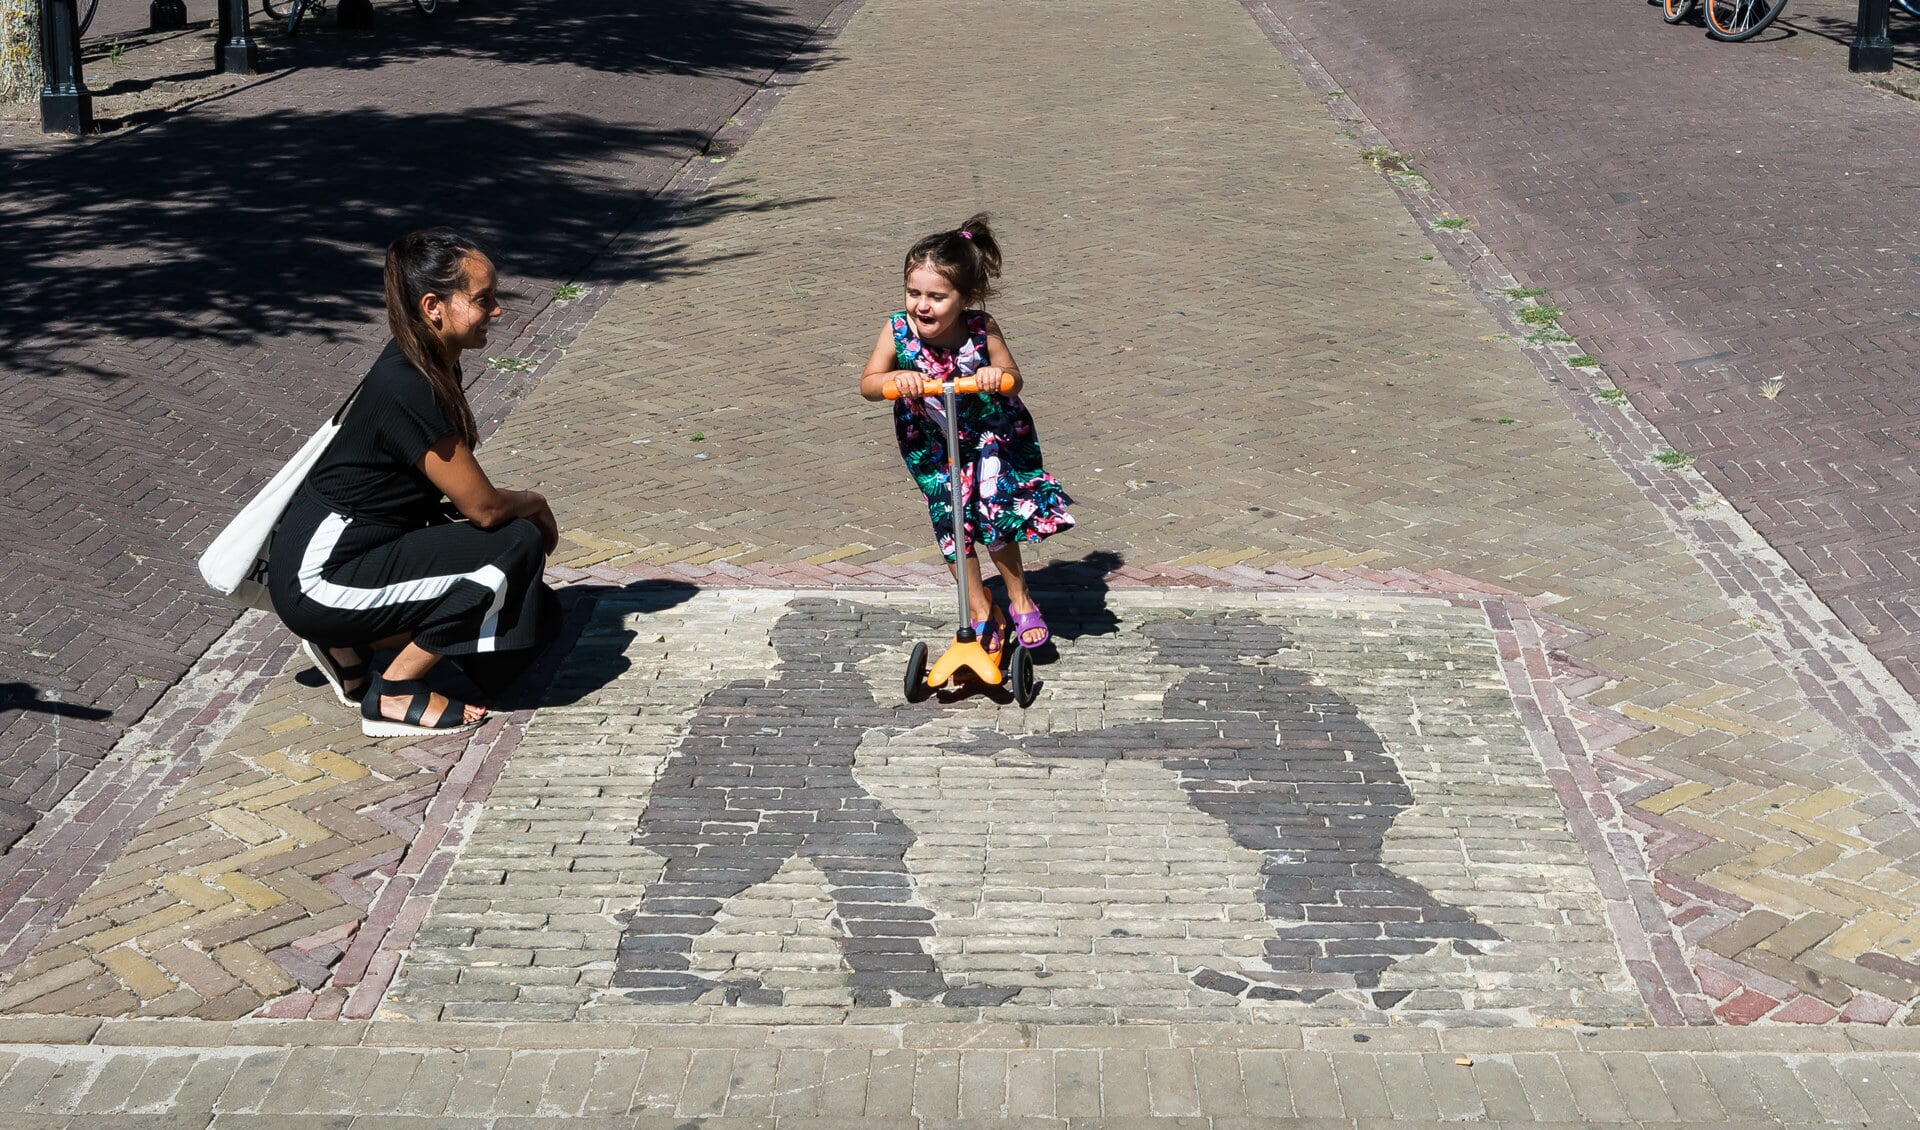 De 4-jarige Nila Huigen zal het een zorg zijn hoe er vroeger gehandeld werd. Zij stept met veel plezier over het patroon. (Foto: Han Giskes)